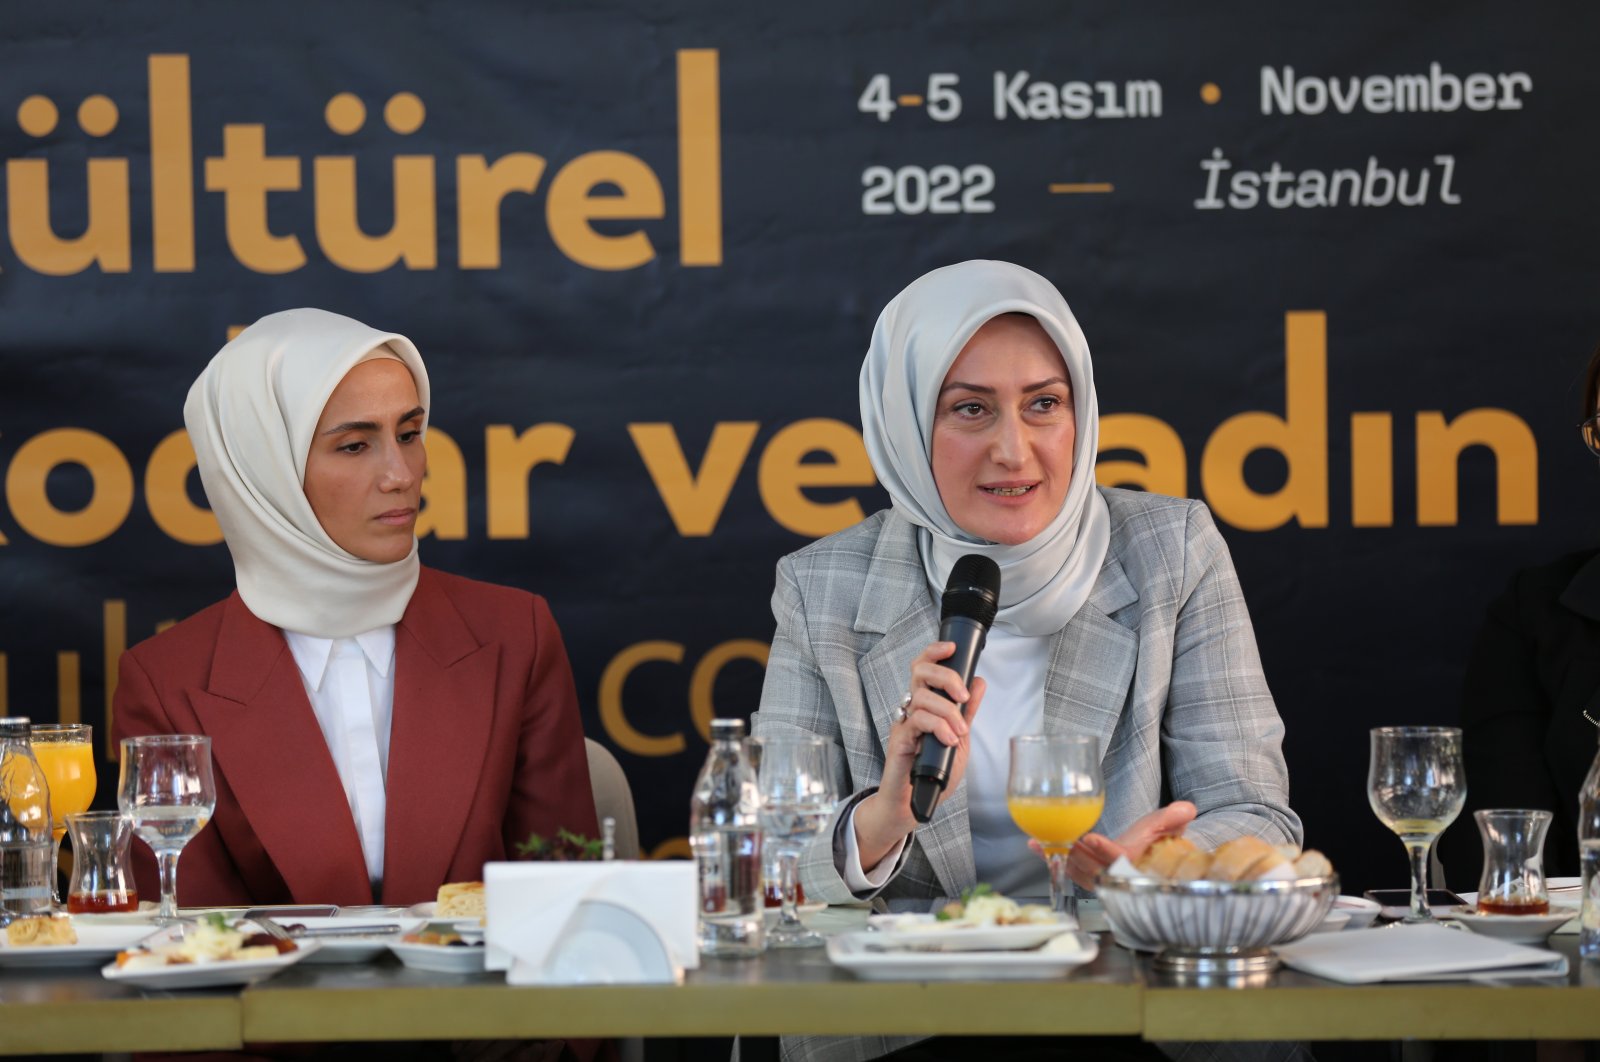 Saliha Okur Gümrükçüoğlu speaks at an event to promote the summit, in Istanbul, Türkiye, Oct. 24, 2022. (Courtesy of KADEM)